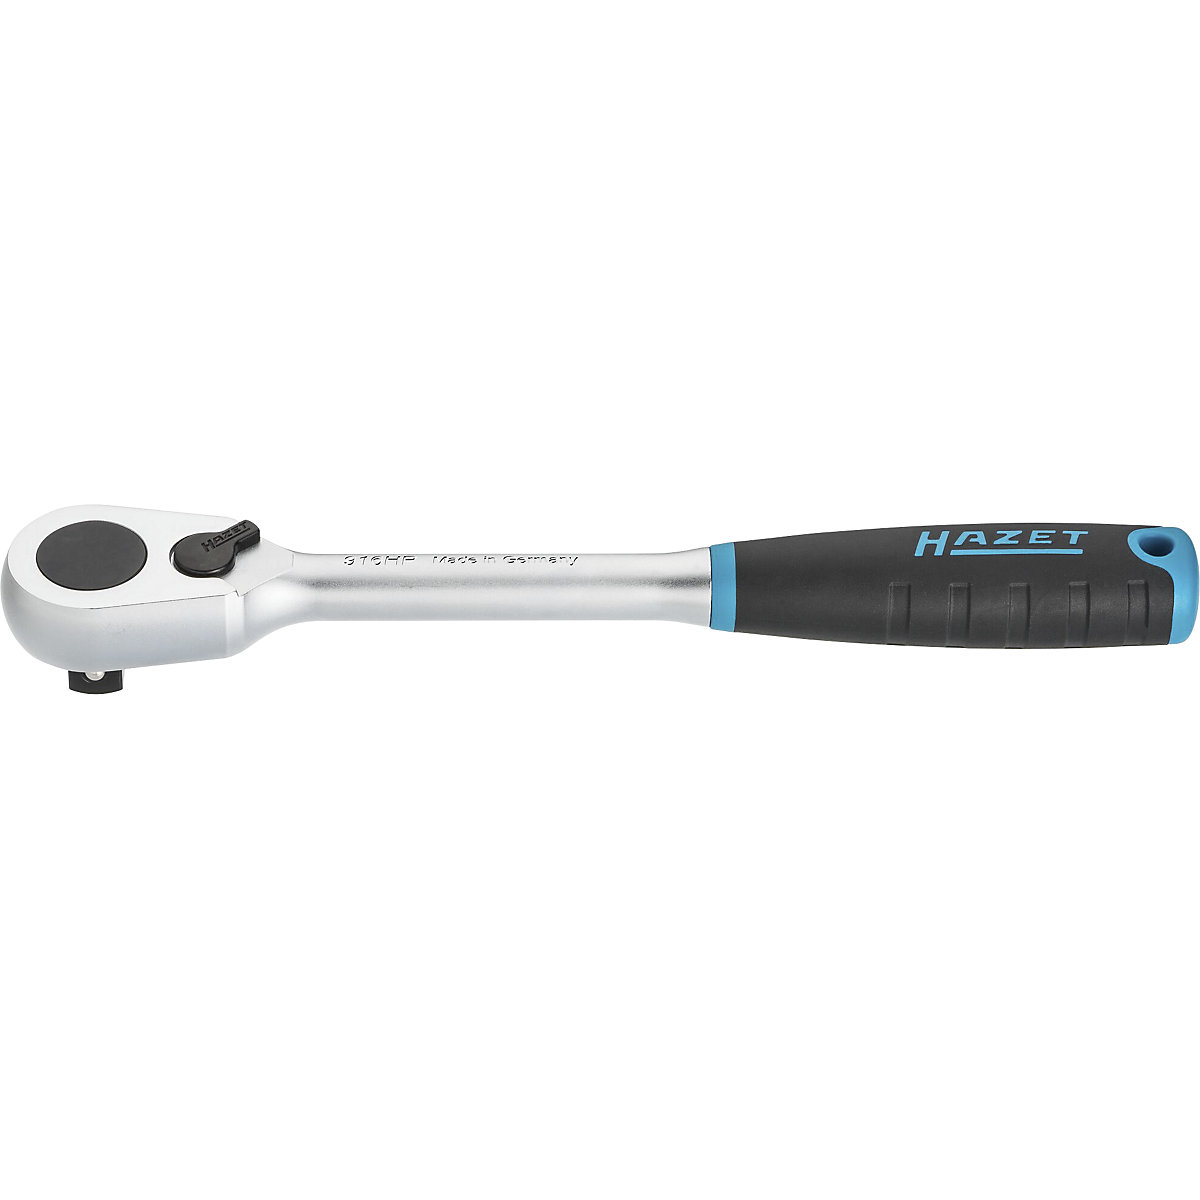 HAZET – Cricchetto reversibile a dentatura fine HiPer 6HP